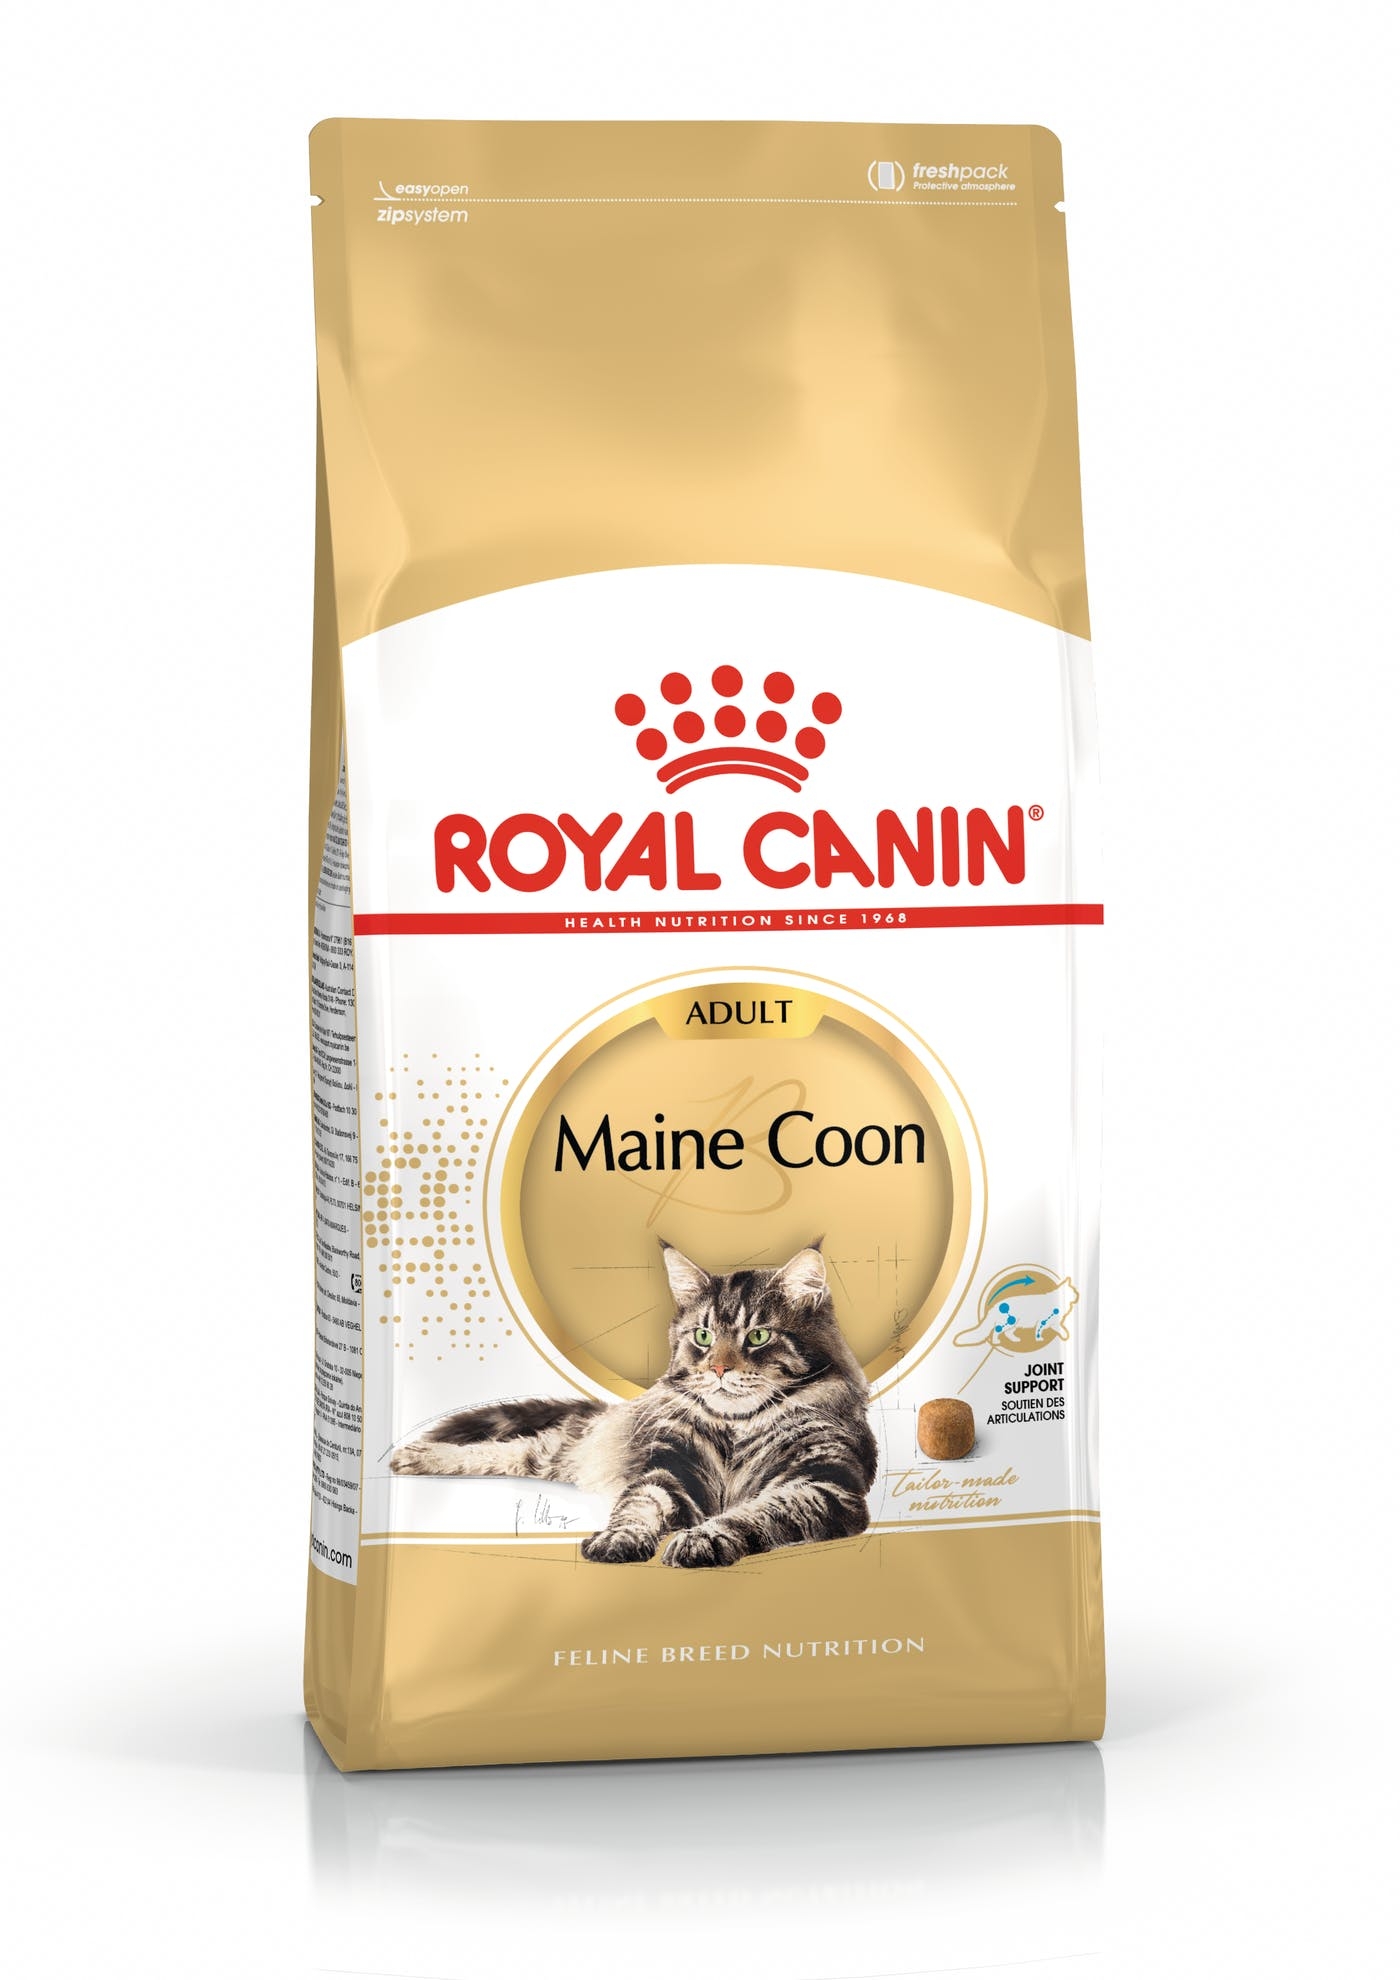 Billede af Royal Canin Maine Coon Adult. Til den voksne kat over 1år.